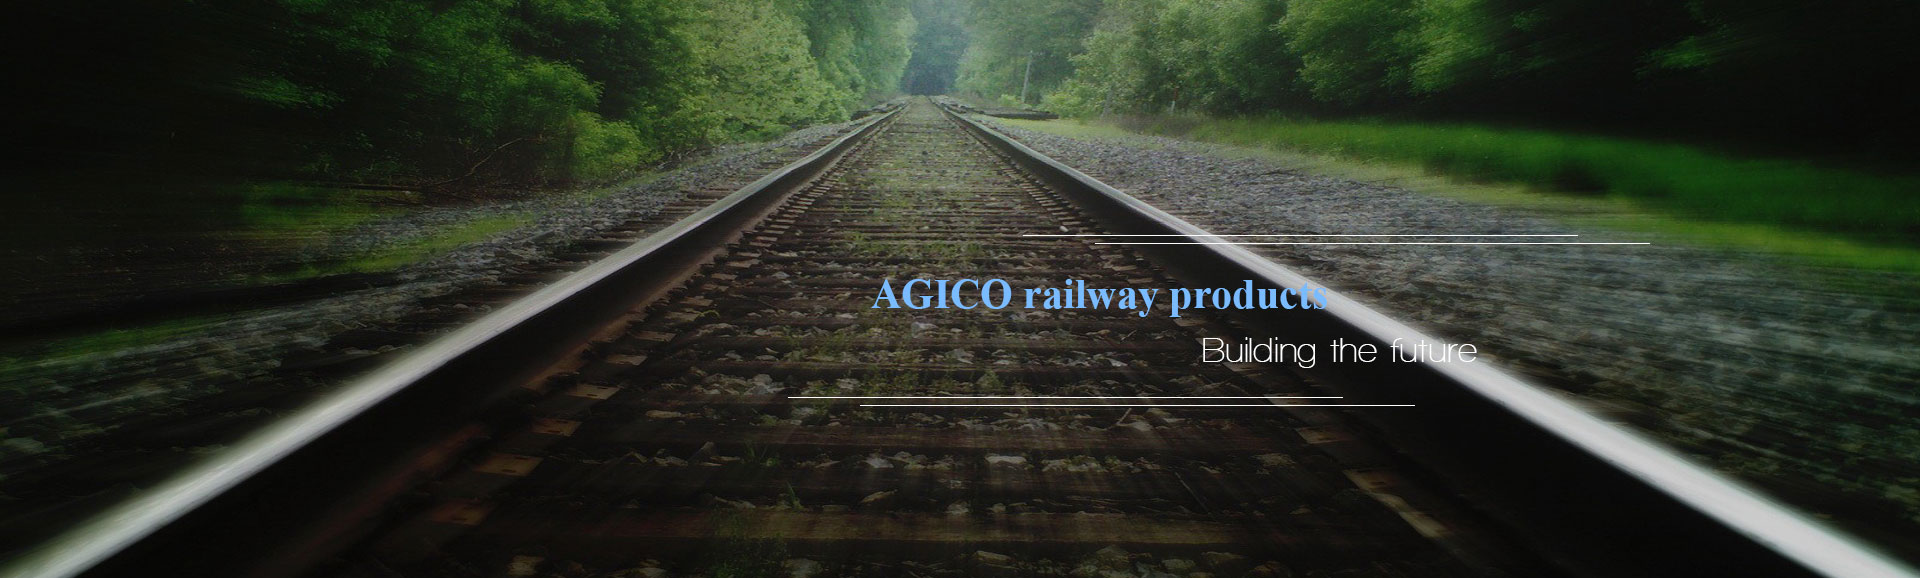 AGICO rail fasteners, building the future